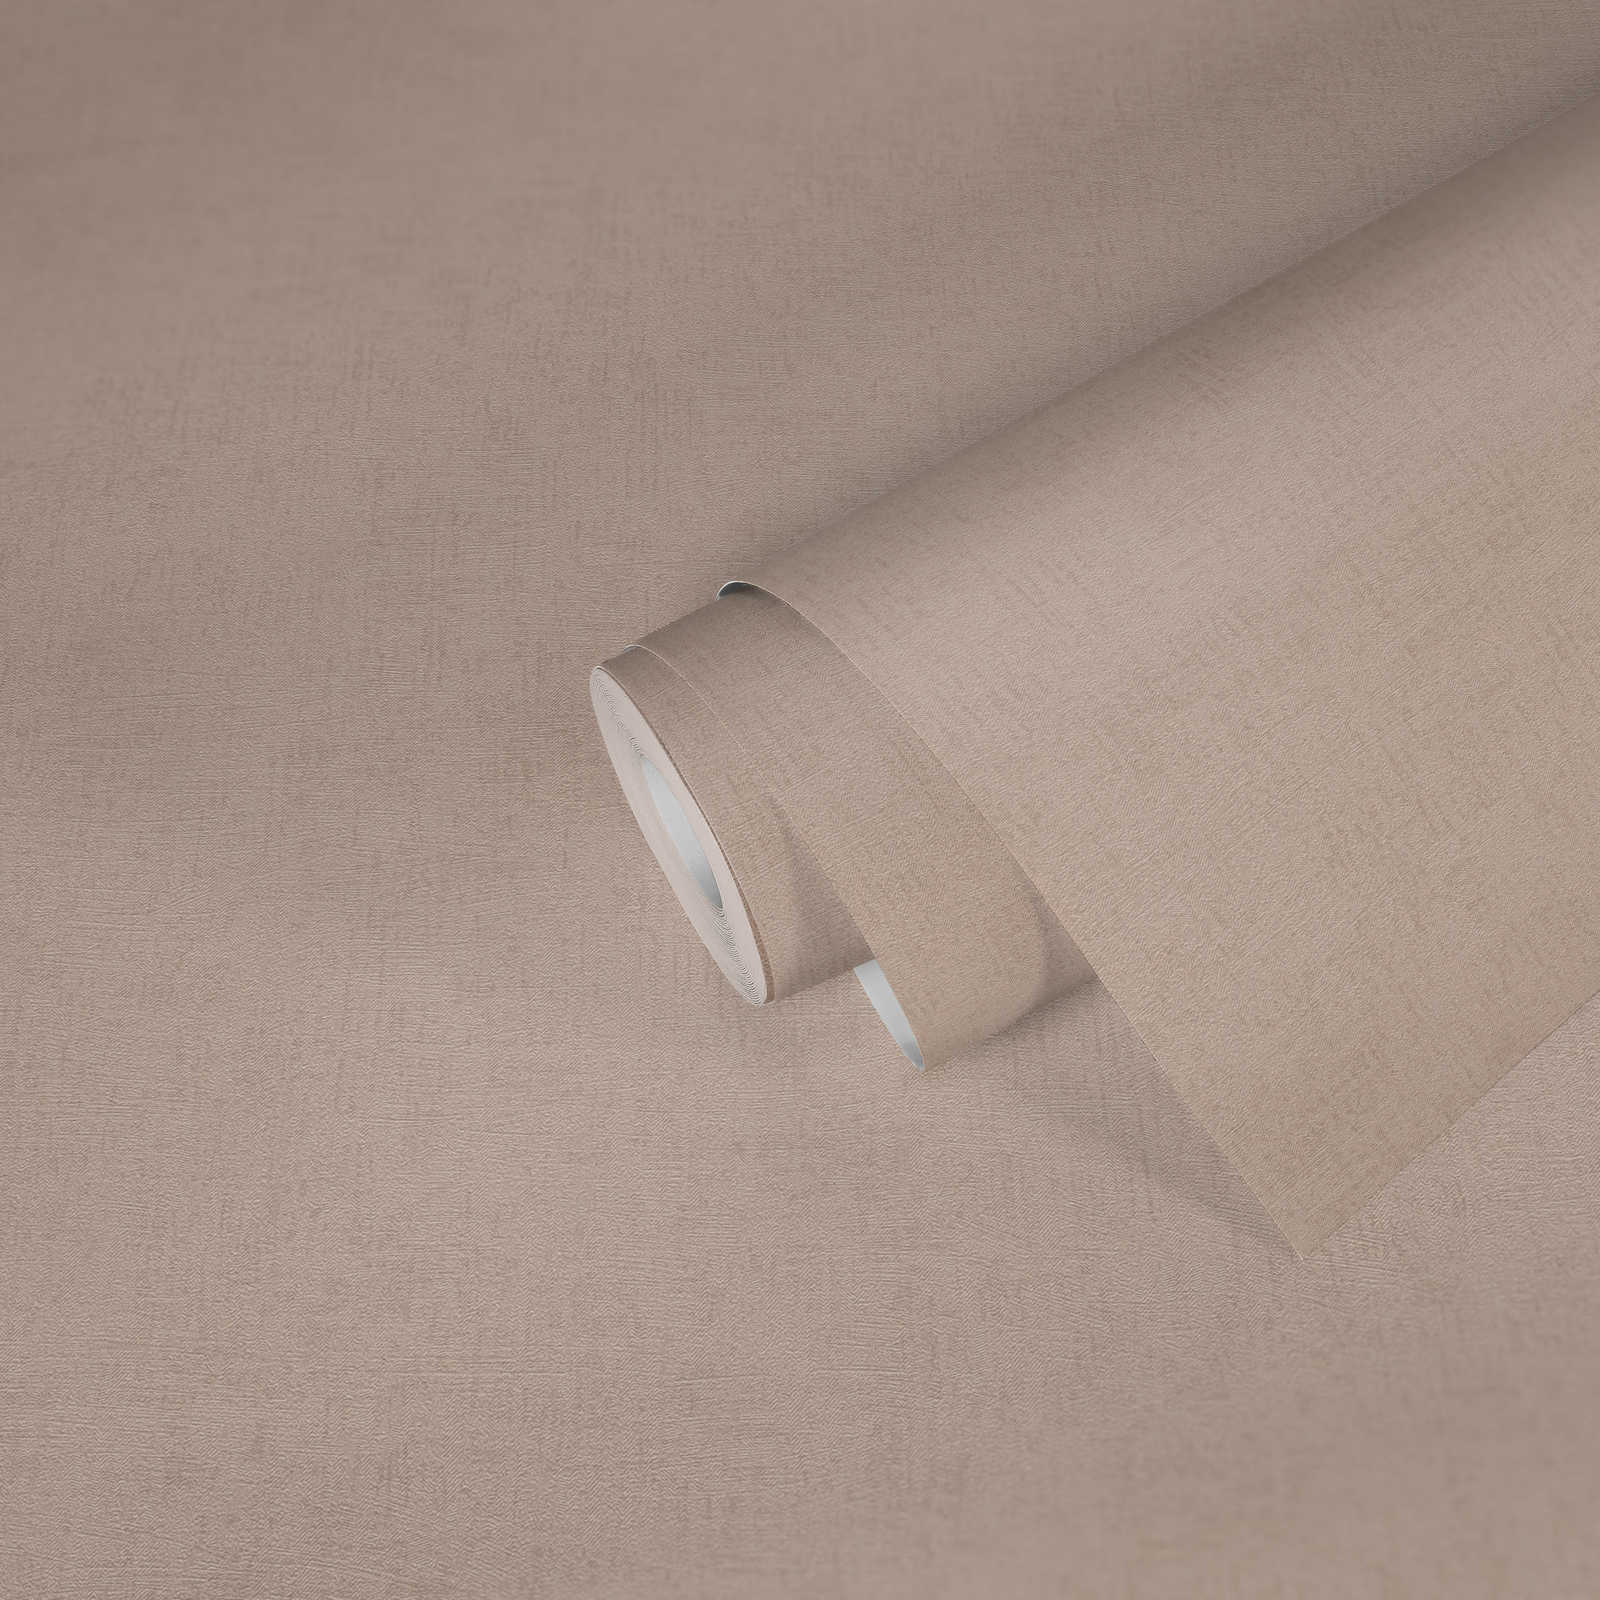             Papier peint uni avec gaufrage structuré & effet brillant - beige, crème, métallique
        